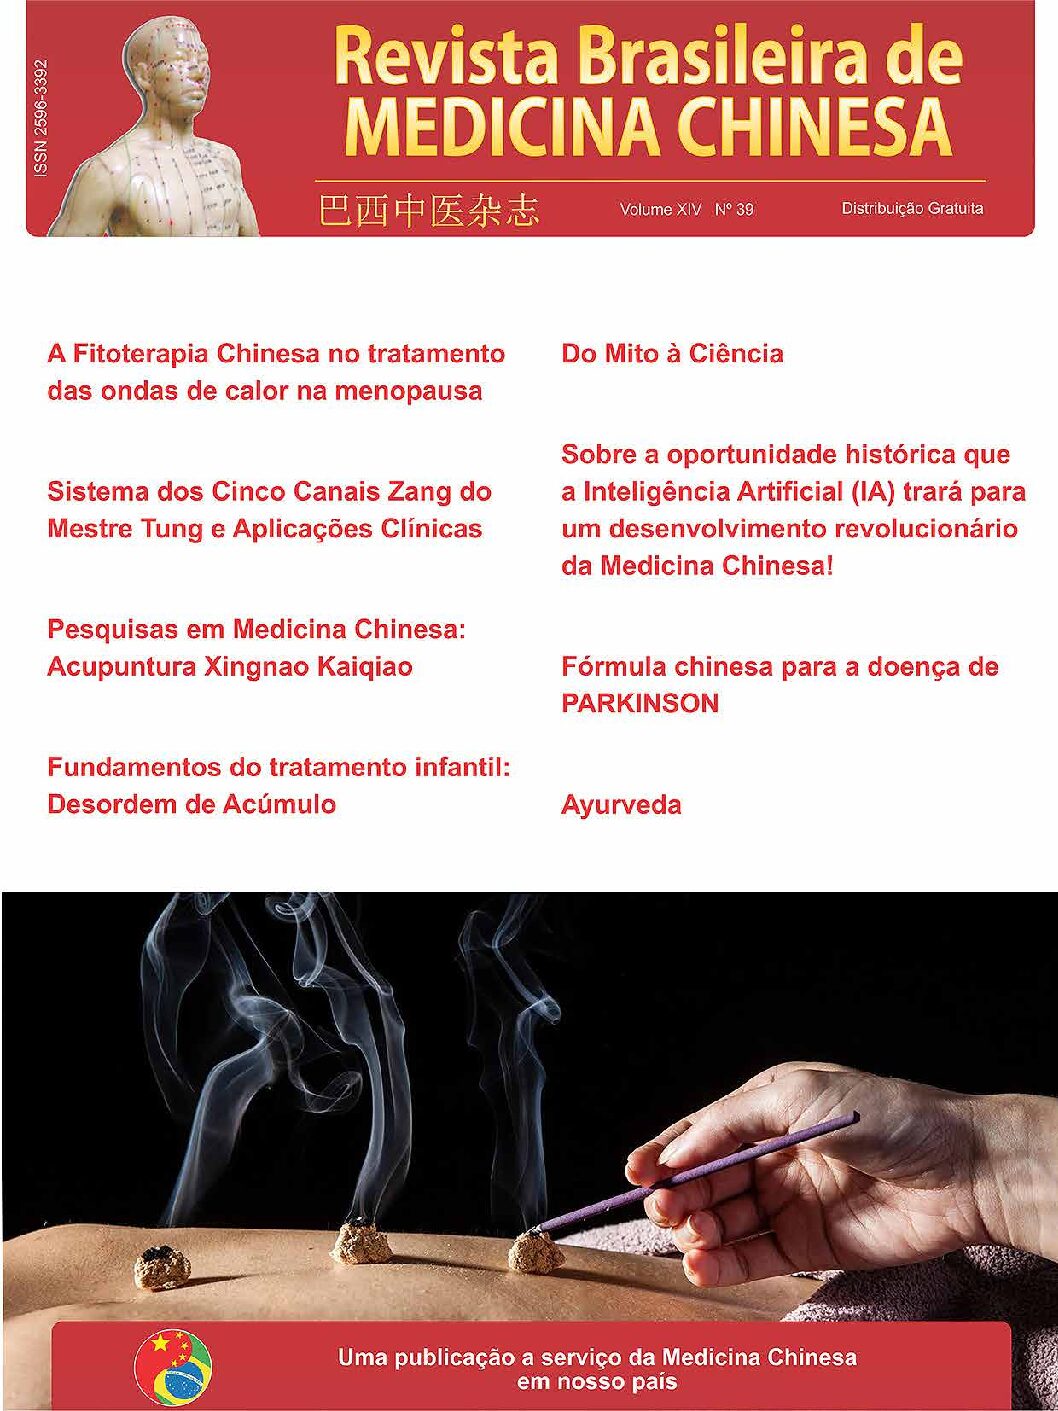 Revista Brasileira de Medicina Chinesa – 39ª Edição